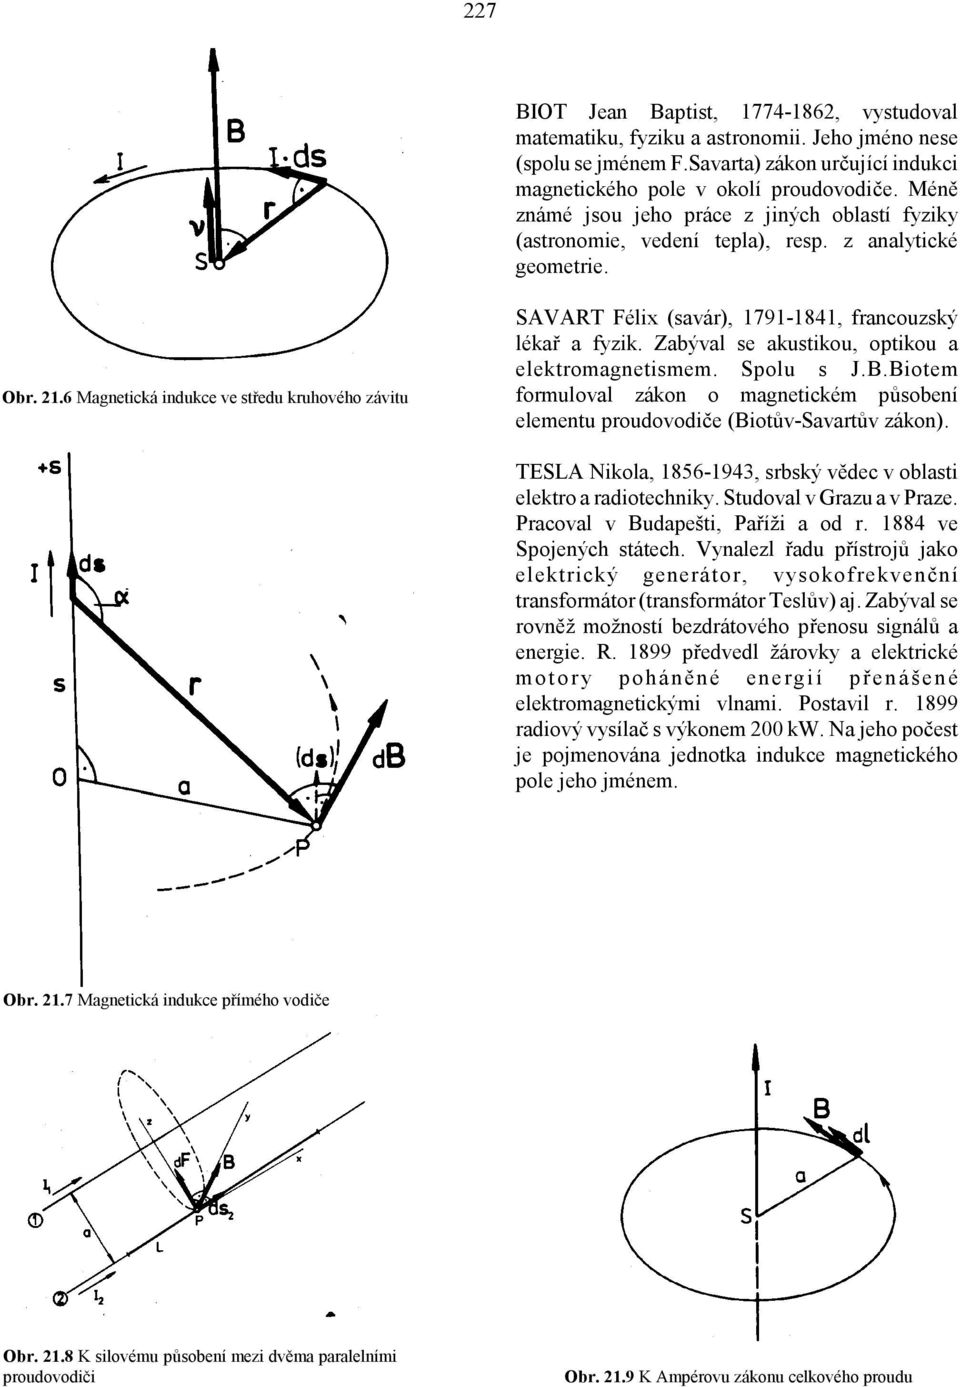 6 Magnetická indukce ve středu kruhového závitu SAVART Félix (savár), 1791-1841, francouzský lékař a fyzik. Zabýval se akustikou, optikou a elektromagnetismem. Spolu s J.B.